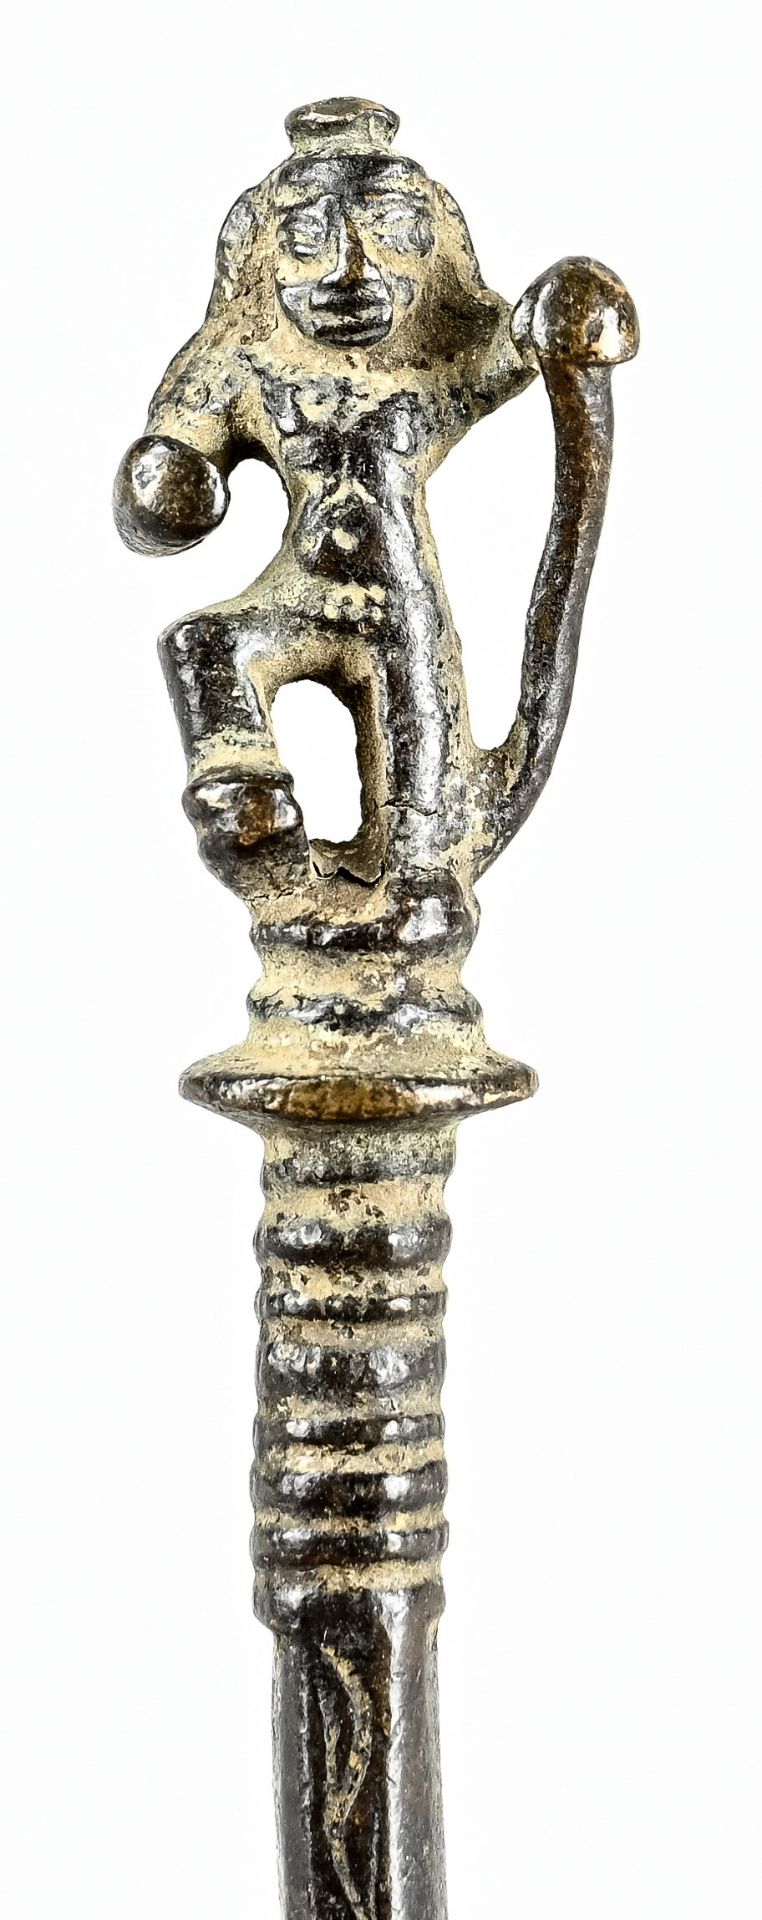 Paar Kerzenlöscher, Deutschland, 19. Jh., Bronze, Länge 14 cm - Bild 3 aus 3